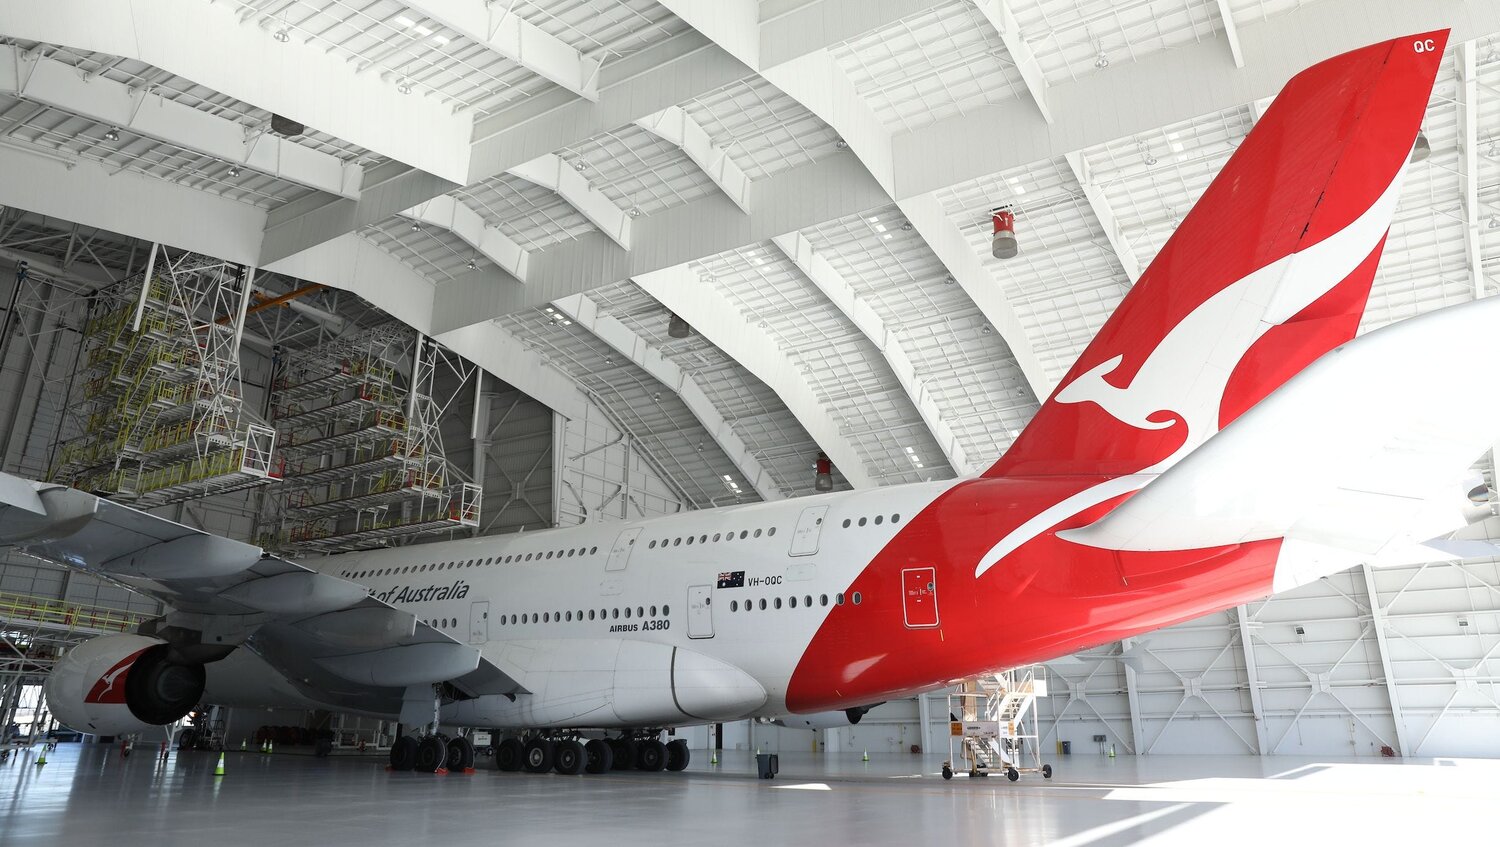 IAM Files for Representation Election for Qantas Aircraft Mechanics